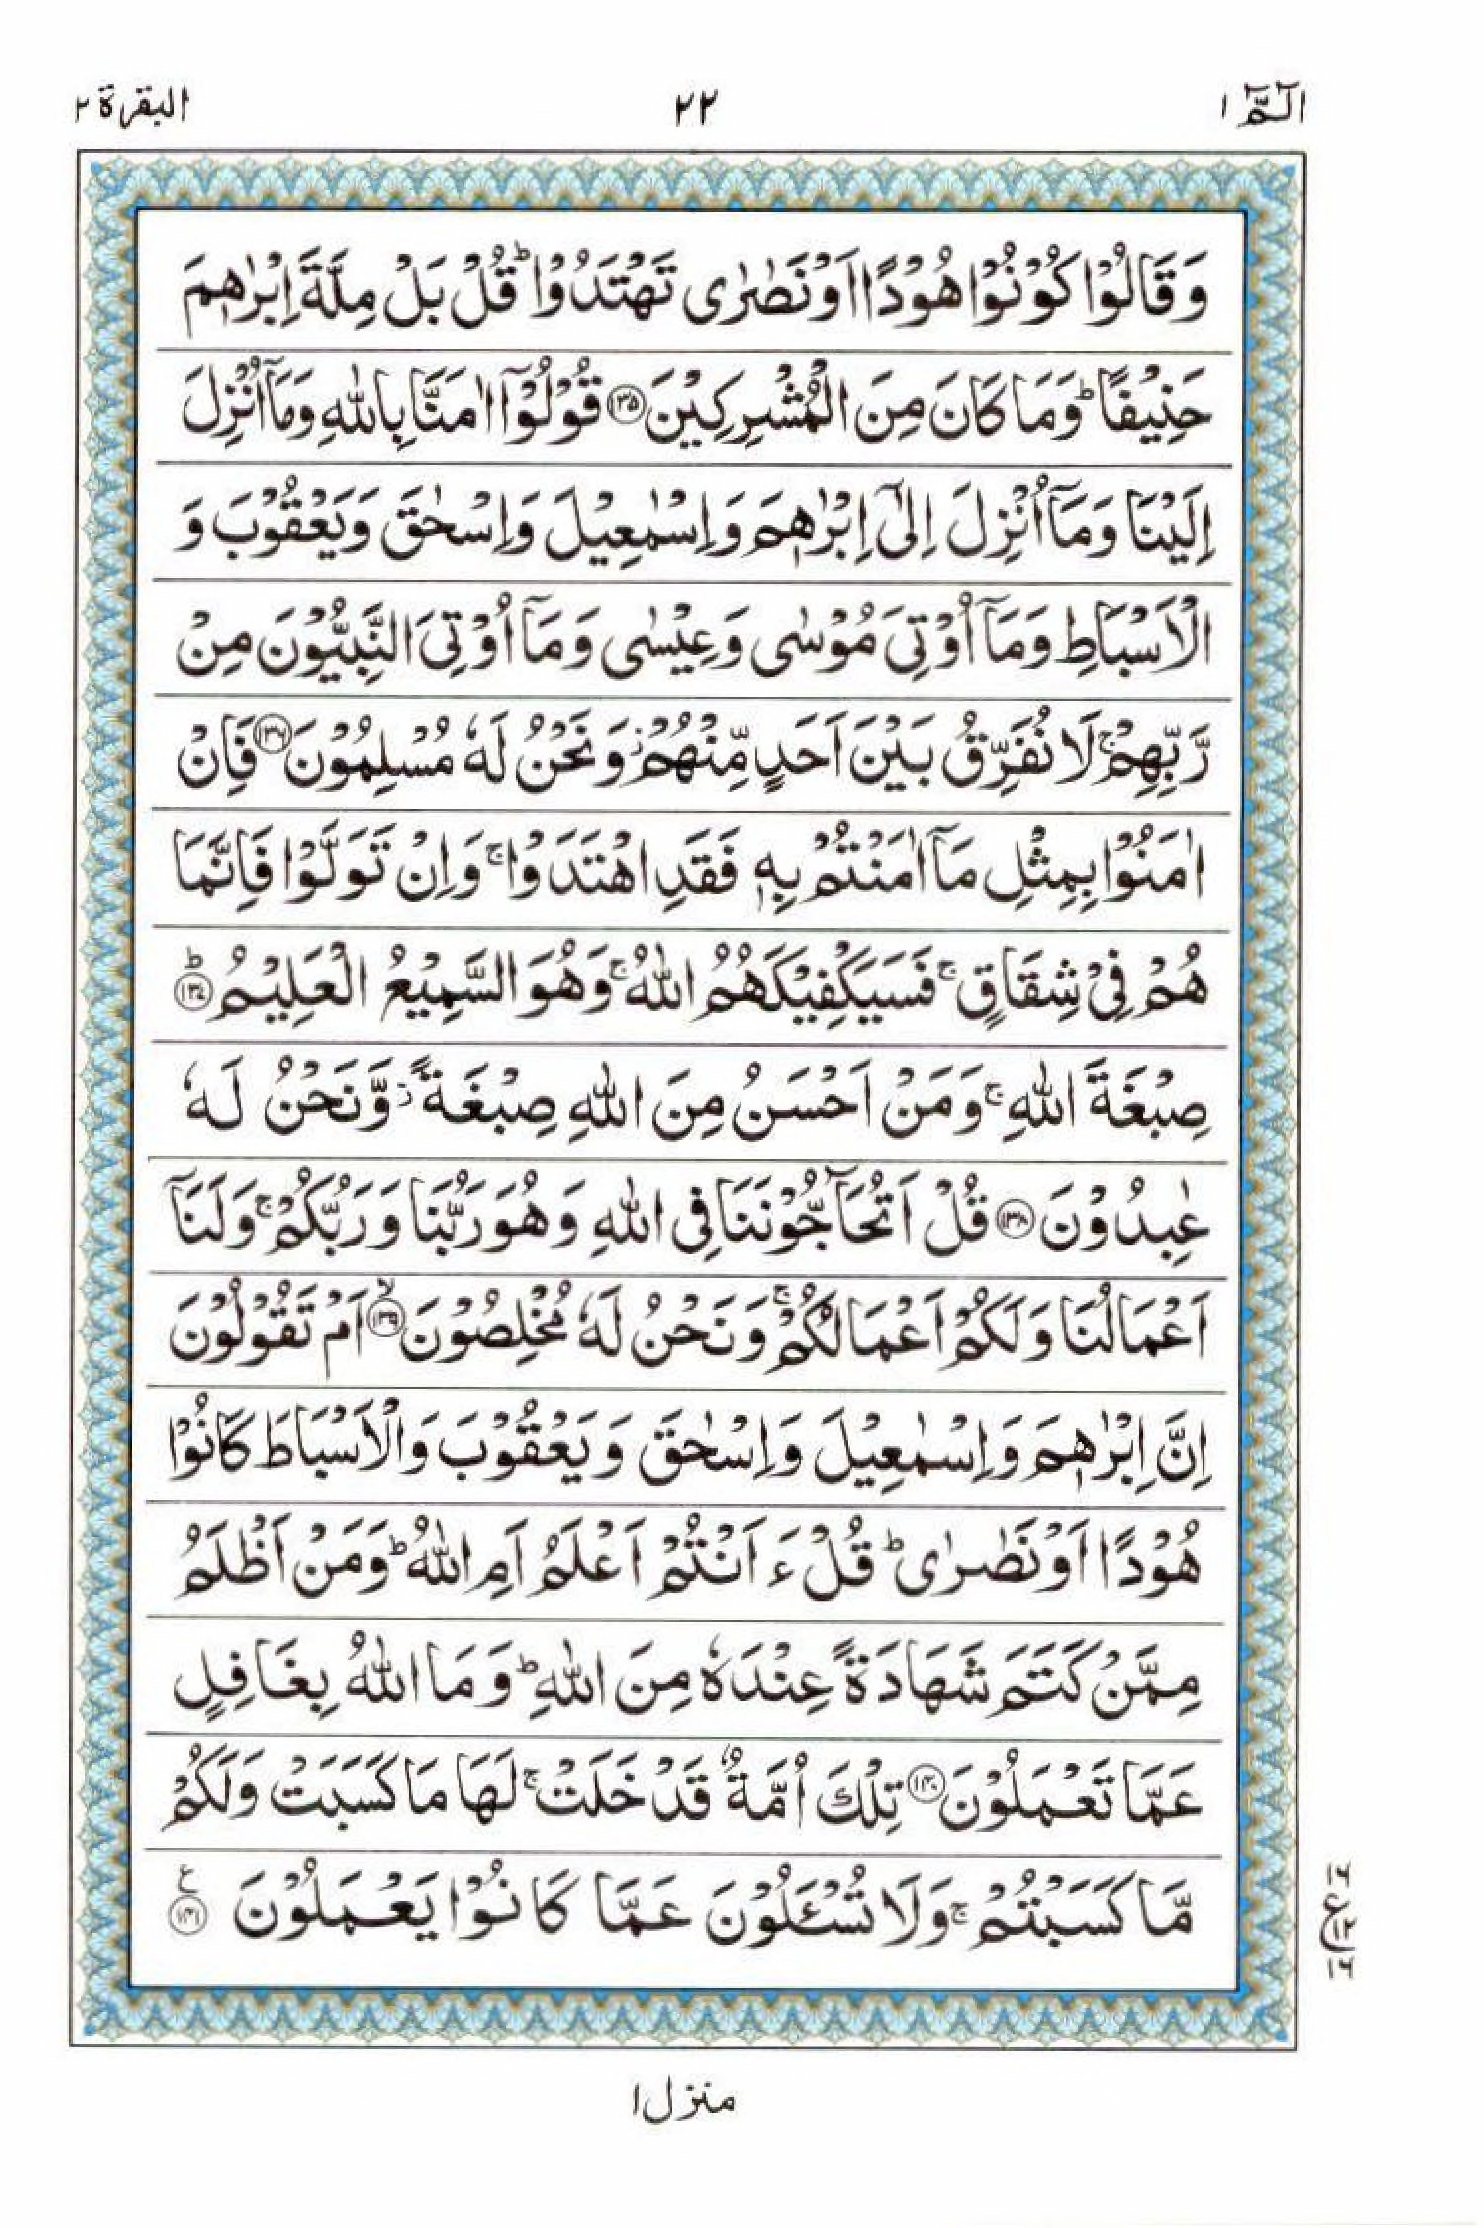 Read 15 Lines Al Quran Part 1 Page No 22, Practice Quran